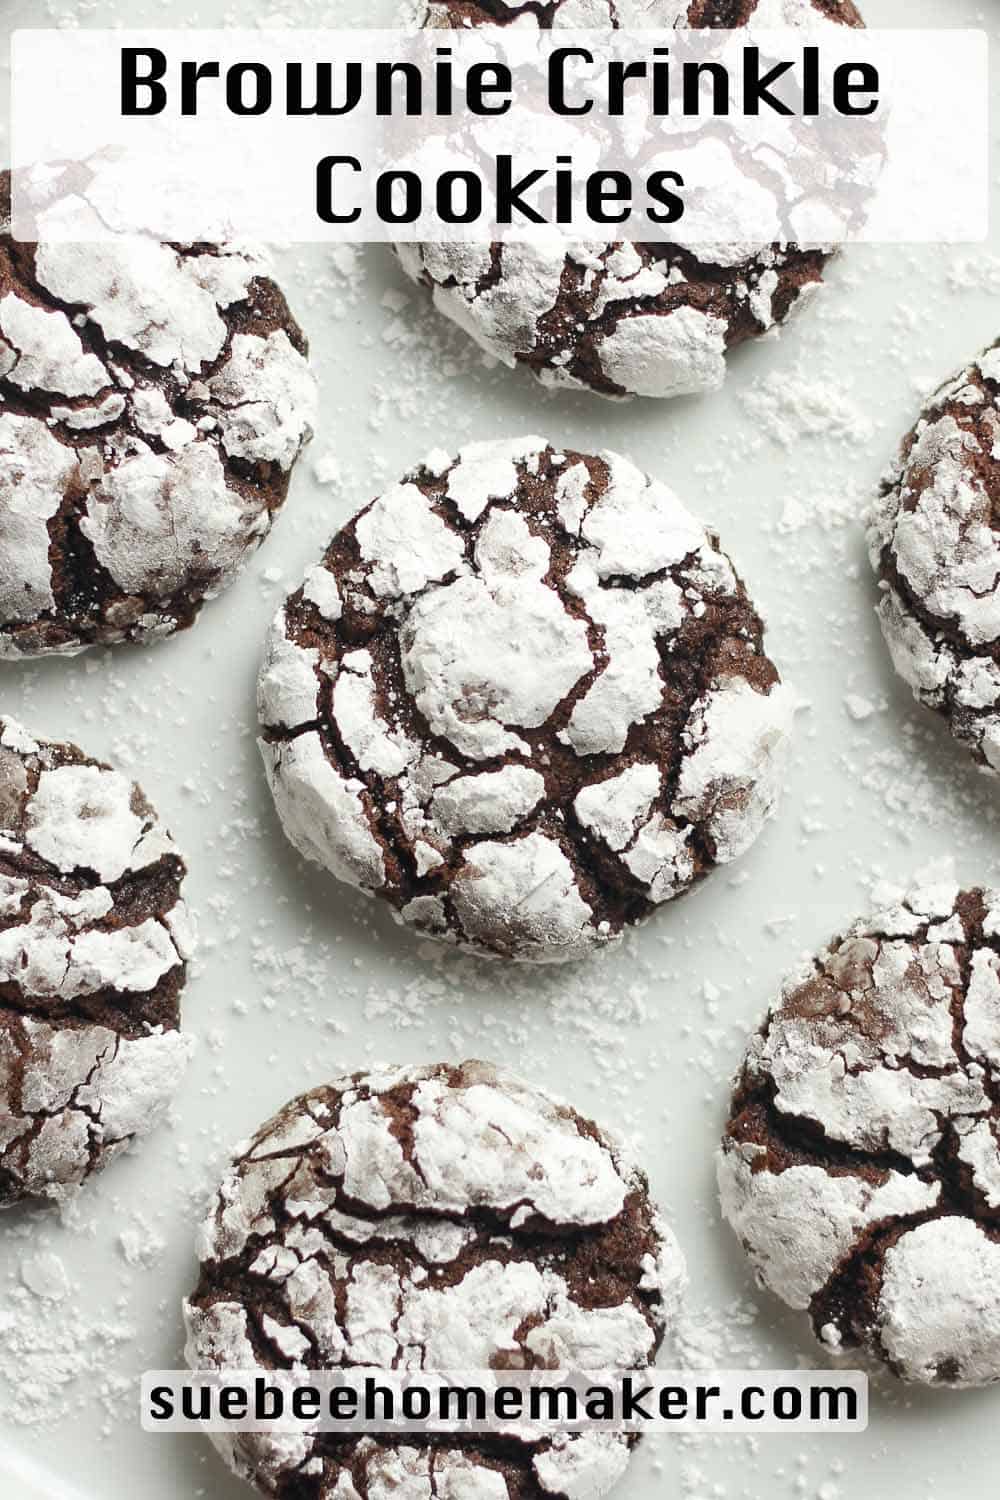 Closeup on brownie crinkle cookies.